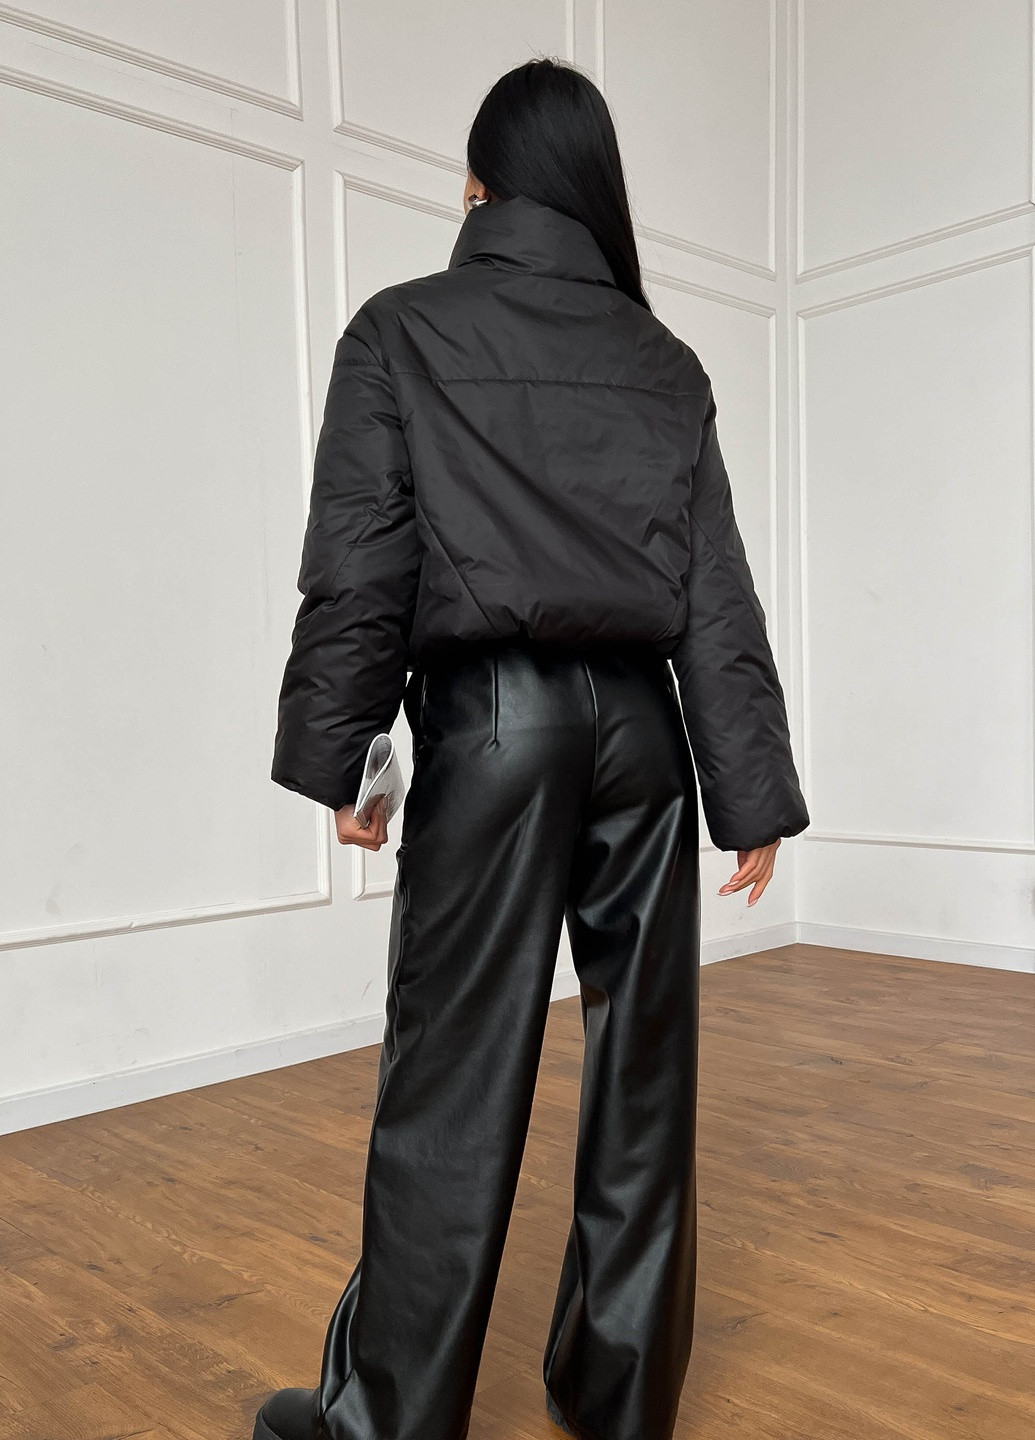 Черная демисезонная демисезонная курточка в черном цвете Jadone Fashion